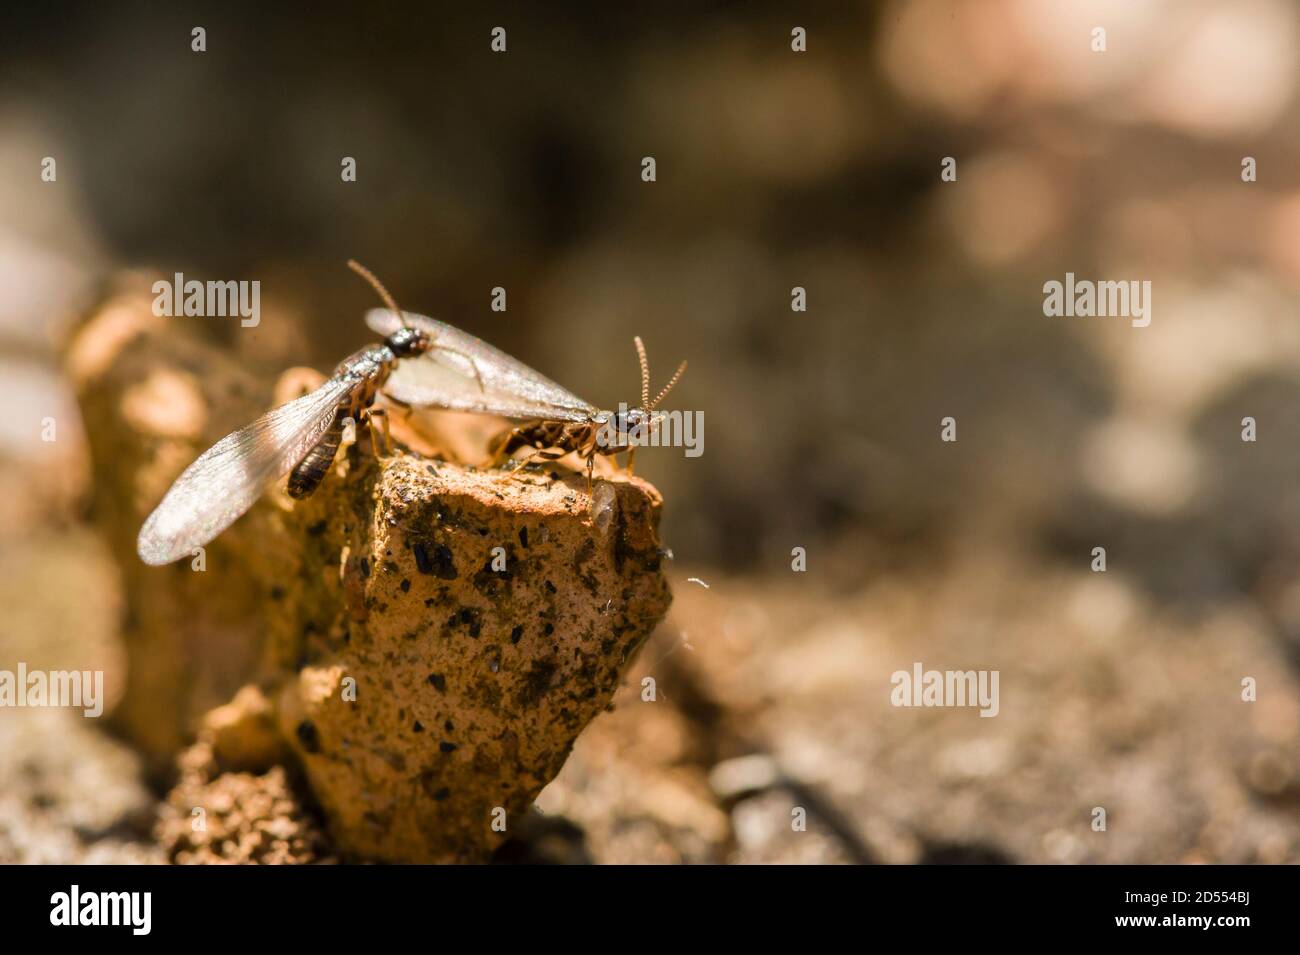 Alado, alado, casta reproductiva de una termita europea Foto de stock